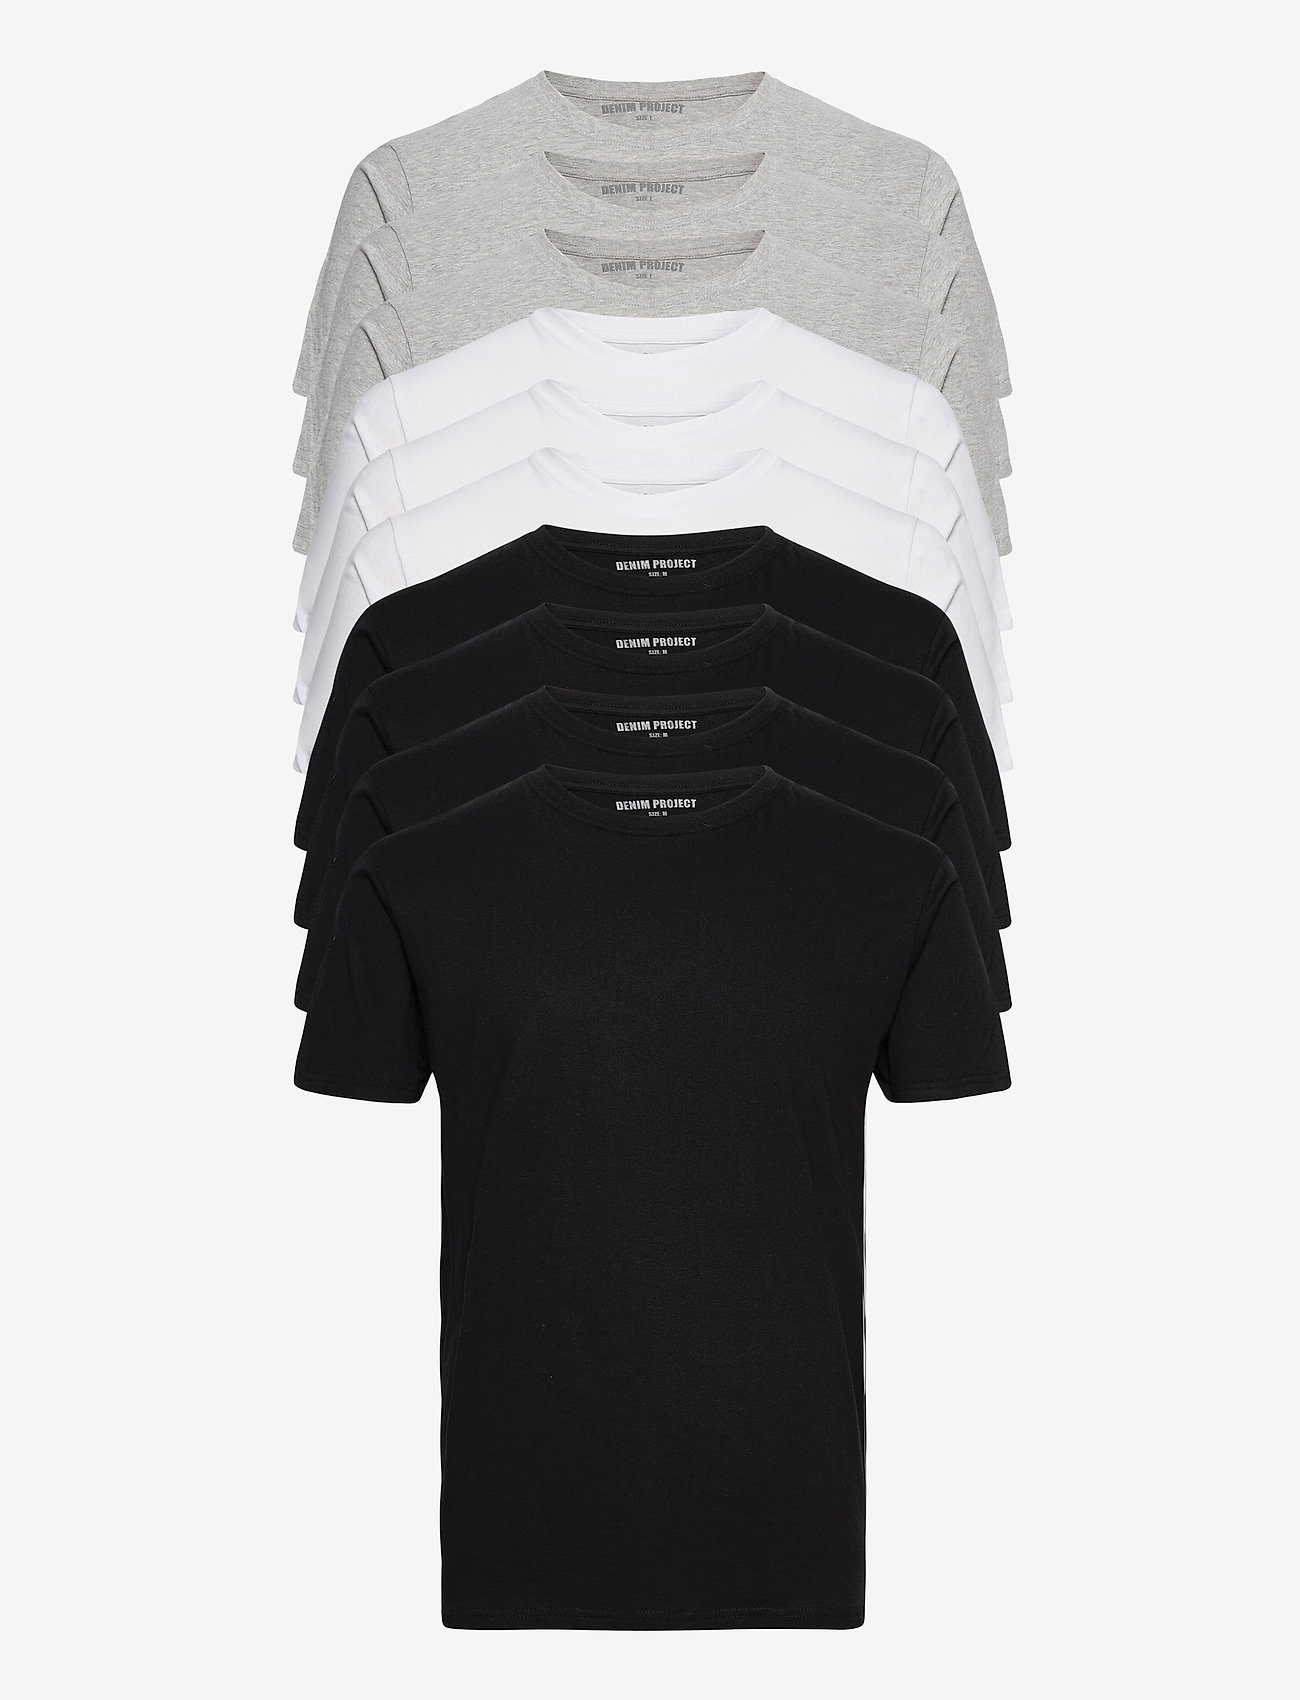 Denim project - 10 Pack T-SHIRT - laisvalaikio marškinėliai - 4xblack/ 3x white/ 3x light grey melange - 1